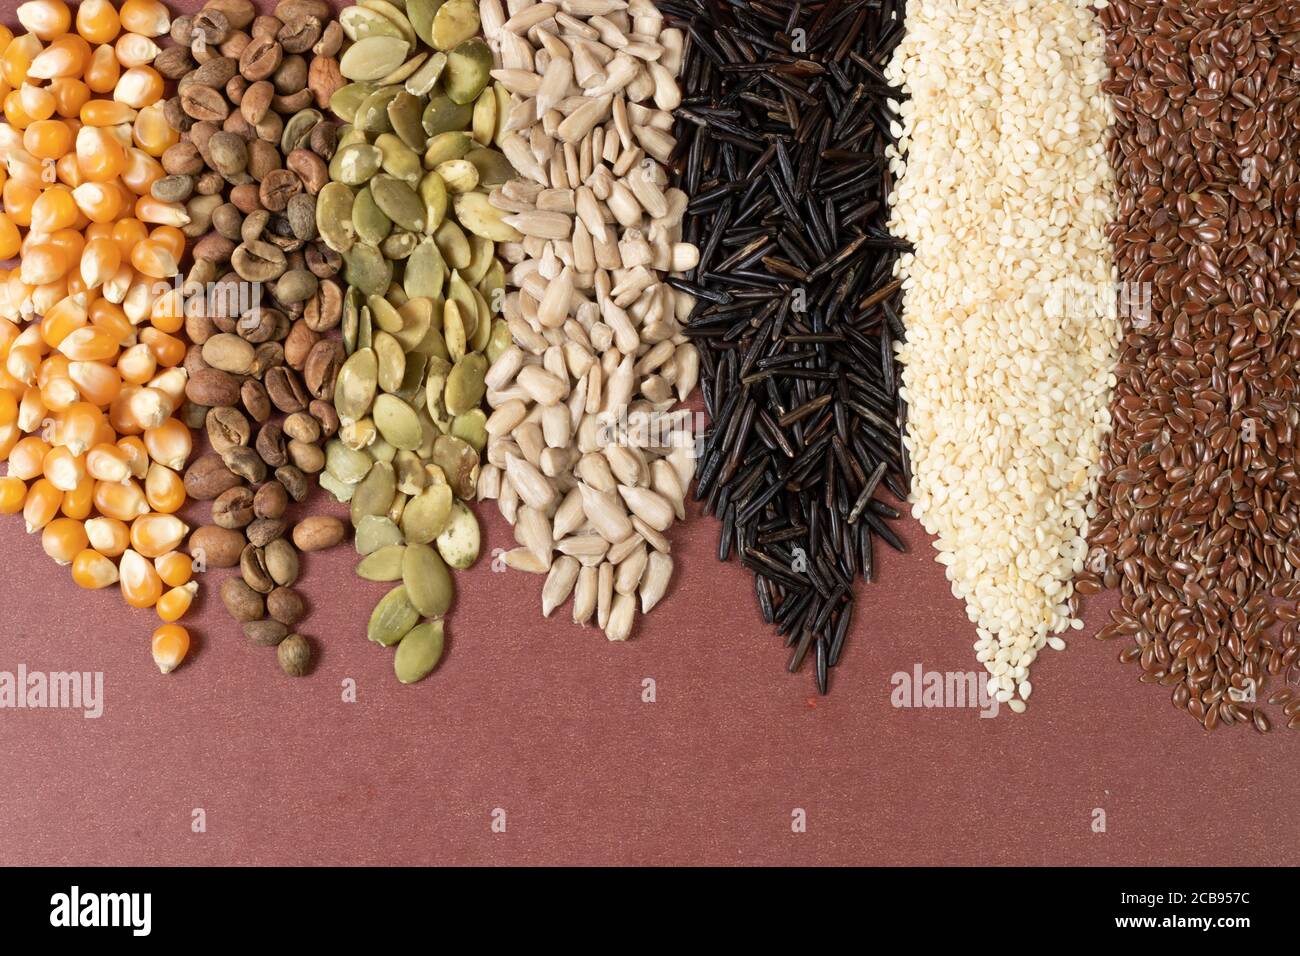 Verschiedene Getreide und Samen - Mais, Kürbis, Kaffee, Quinoa, Pfeffer, Reis, Hirse Sonnenblume - auf einer braunen Oberfläche Stockfoto